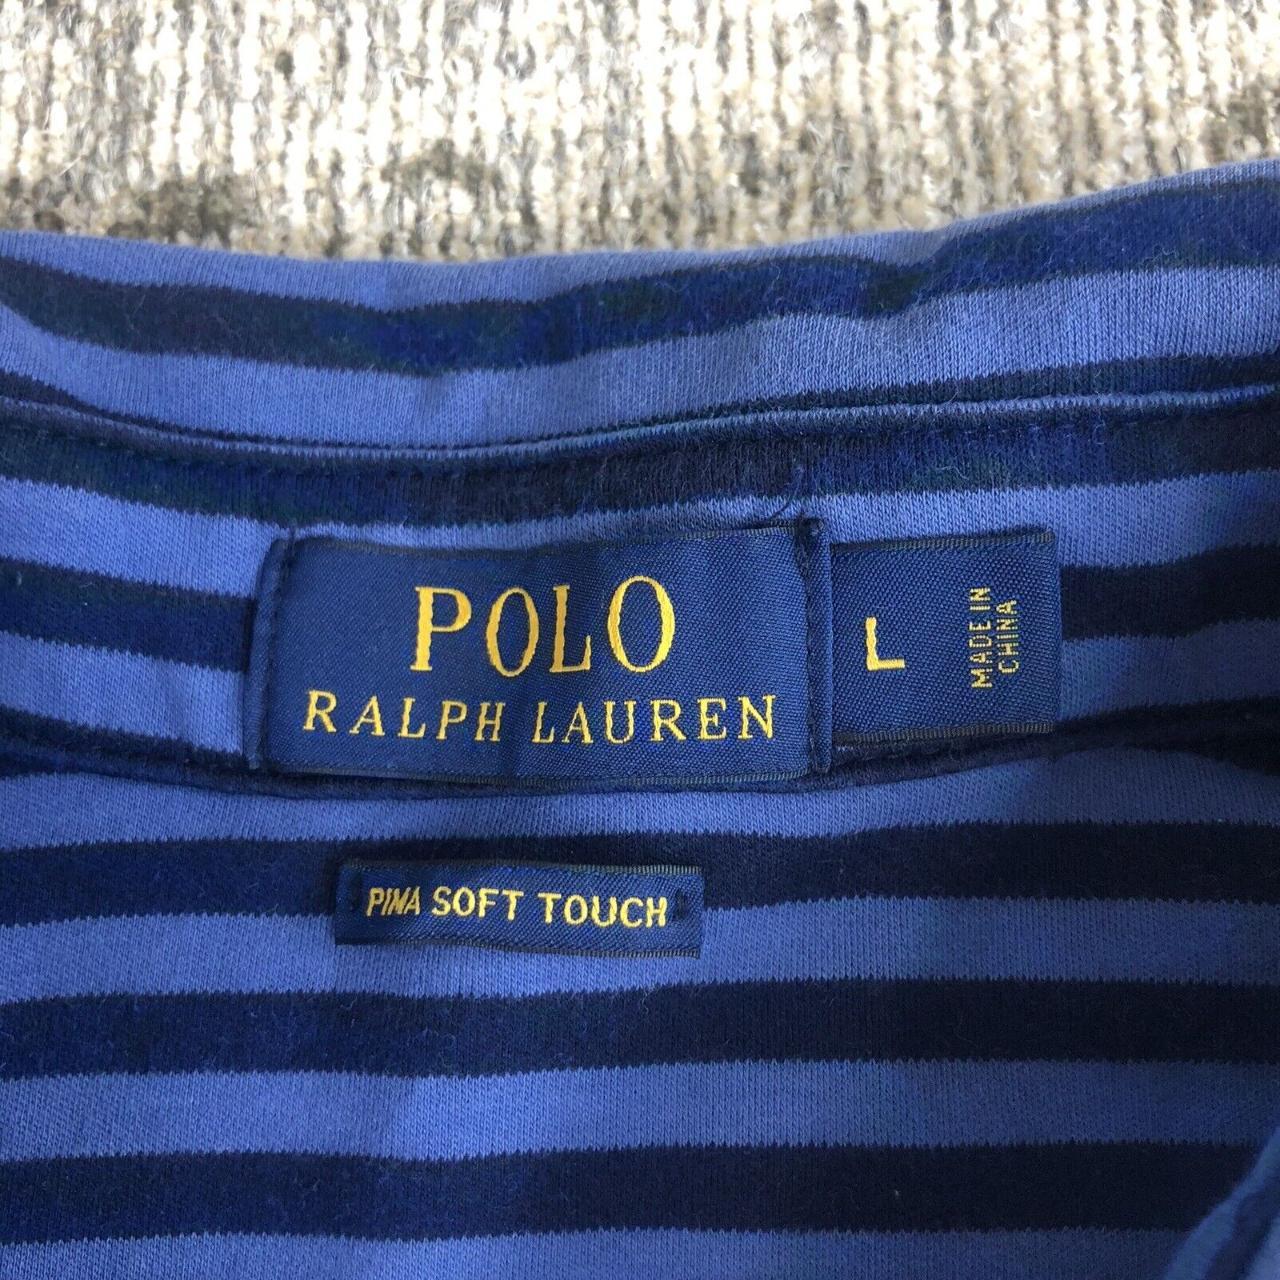 Ralph Lauren Polo Shirt blue Adult large blue Pony... - Depop